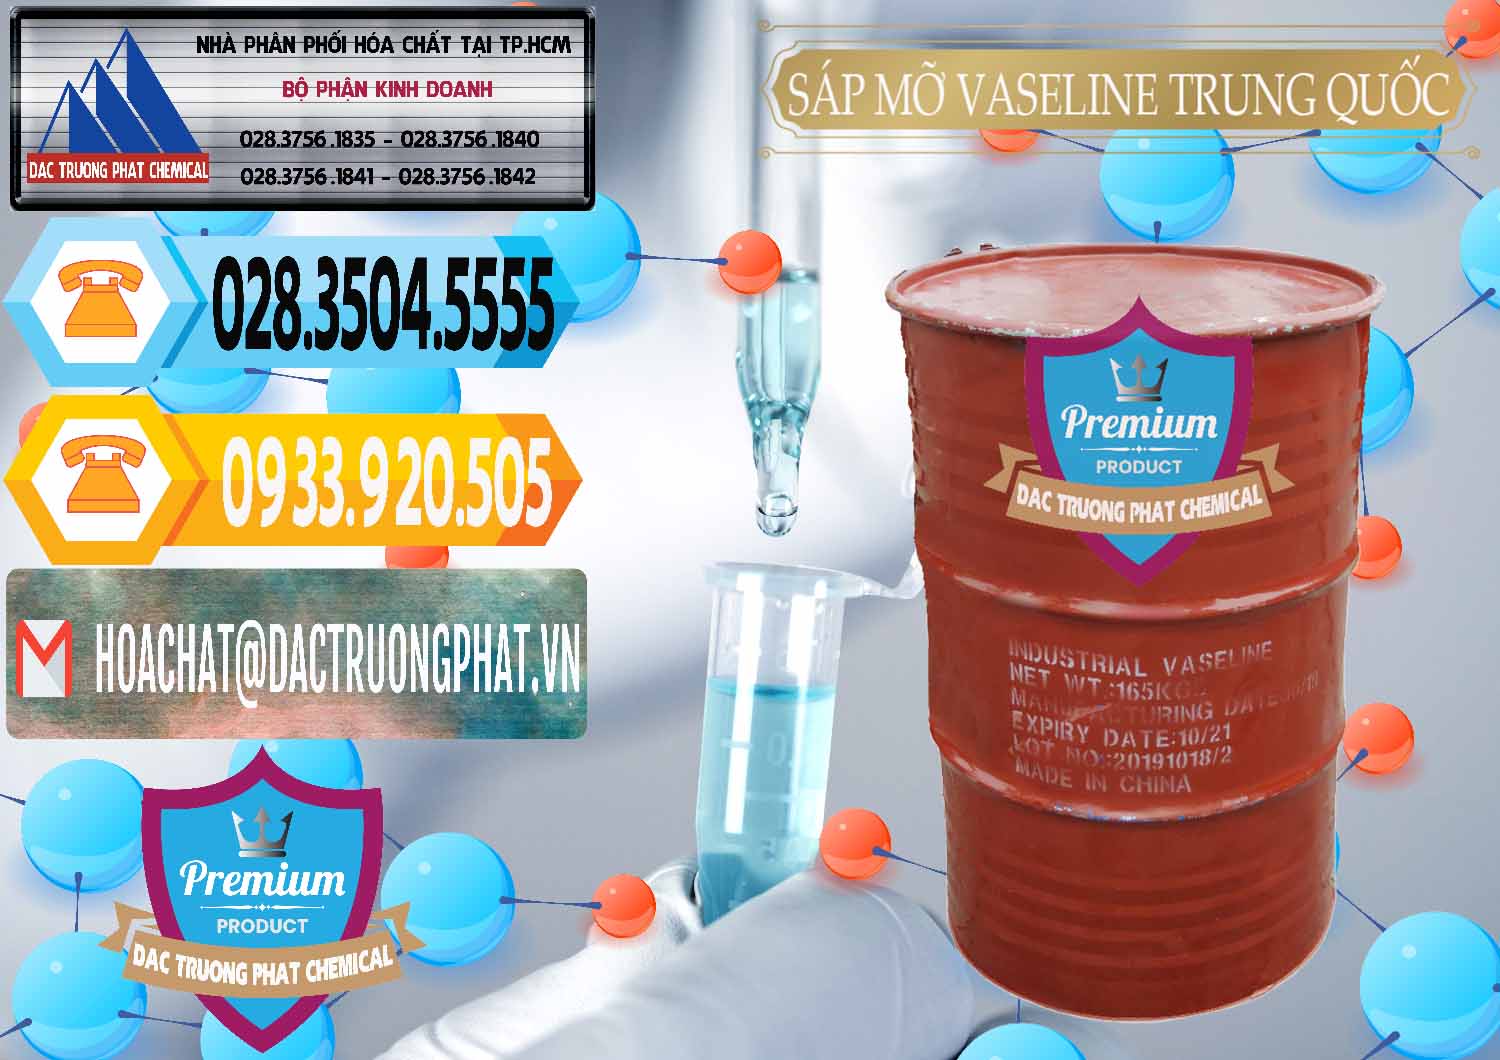 Cty chuyên cung ứng _ bán Sáp Mỡ Vaseline Trung Quốc China - 0122 - Công ty phân phối ( nhập khẩu ) hóa chất tại TP.HCM - hoachattayrua.net